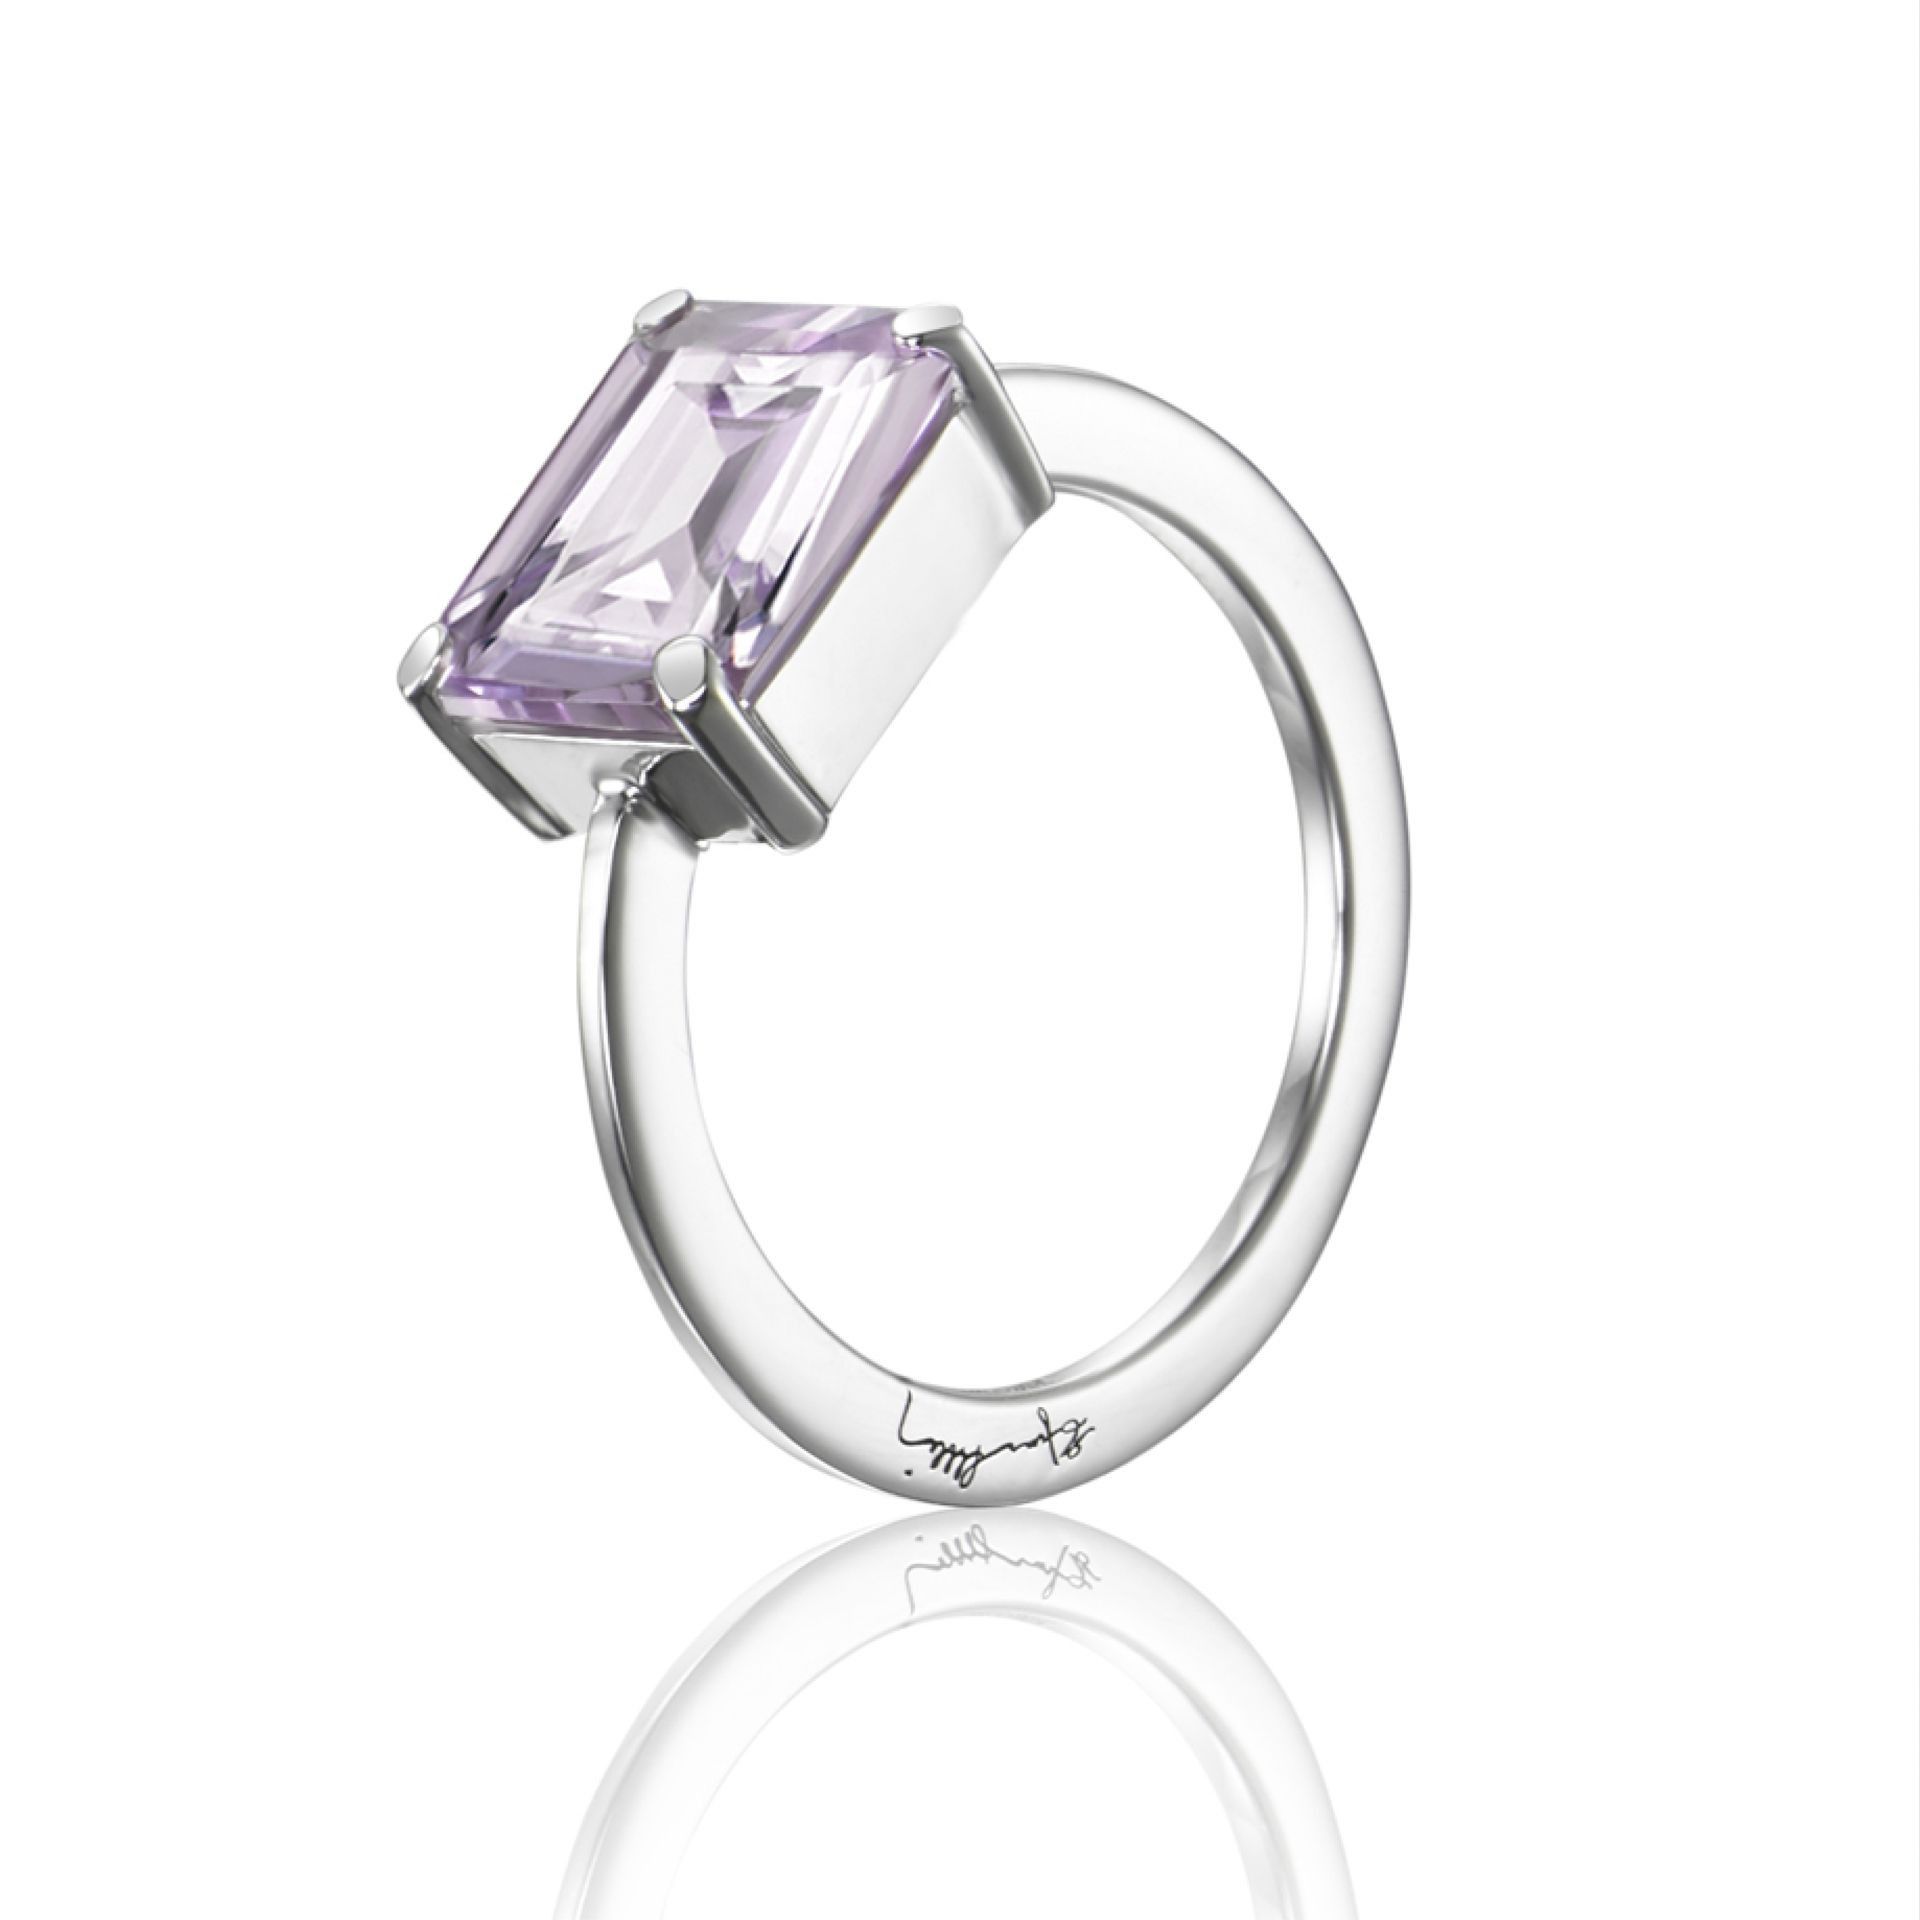 Efva Attling A Purple Dream Ring. 19.50 MM - SILVER